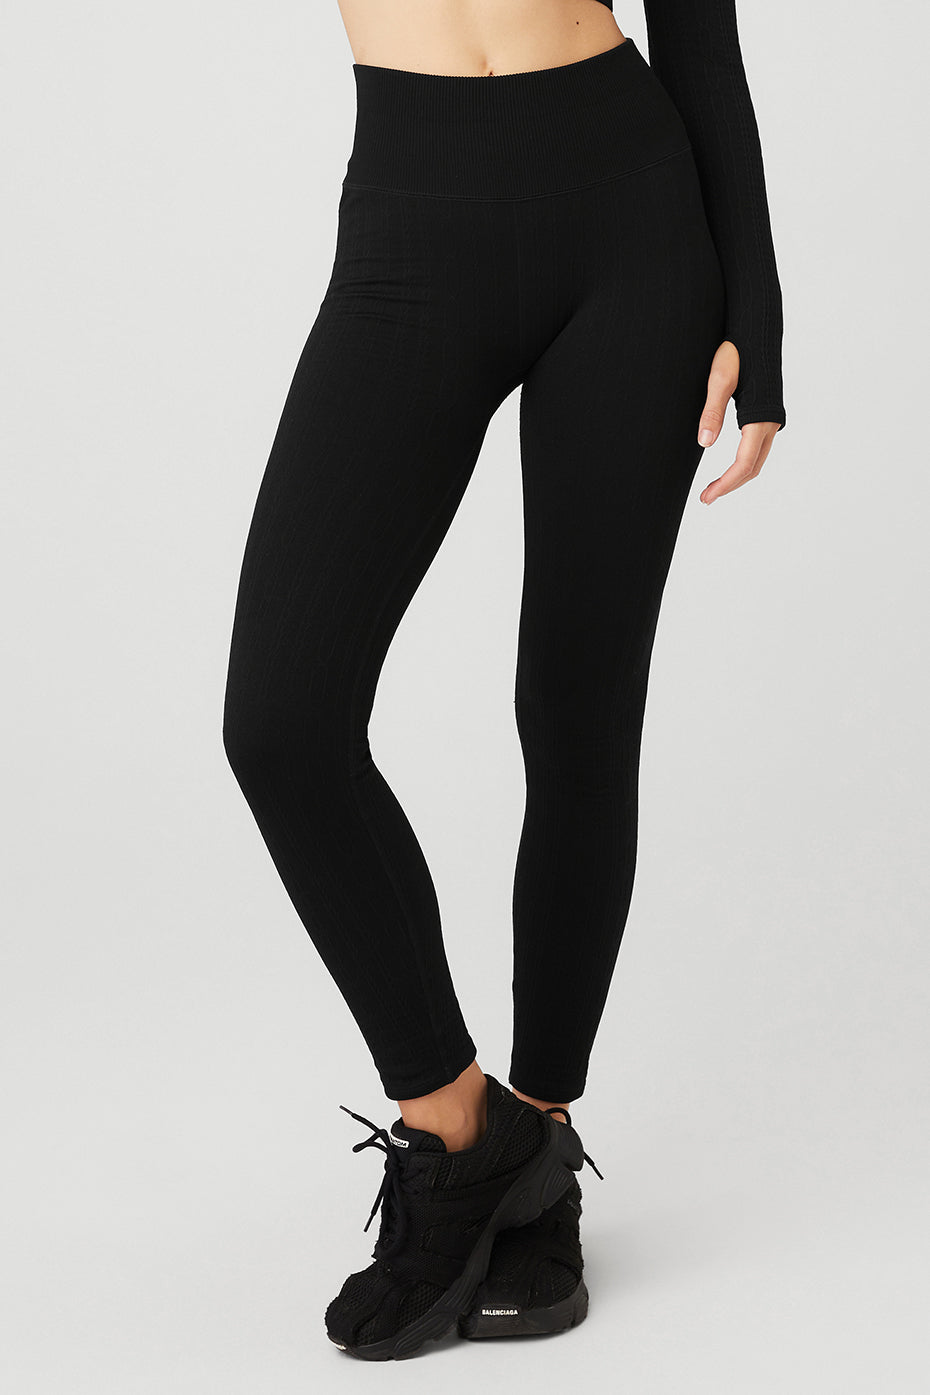 Balenciaga logo waistband leggings, Black